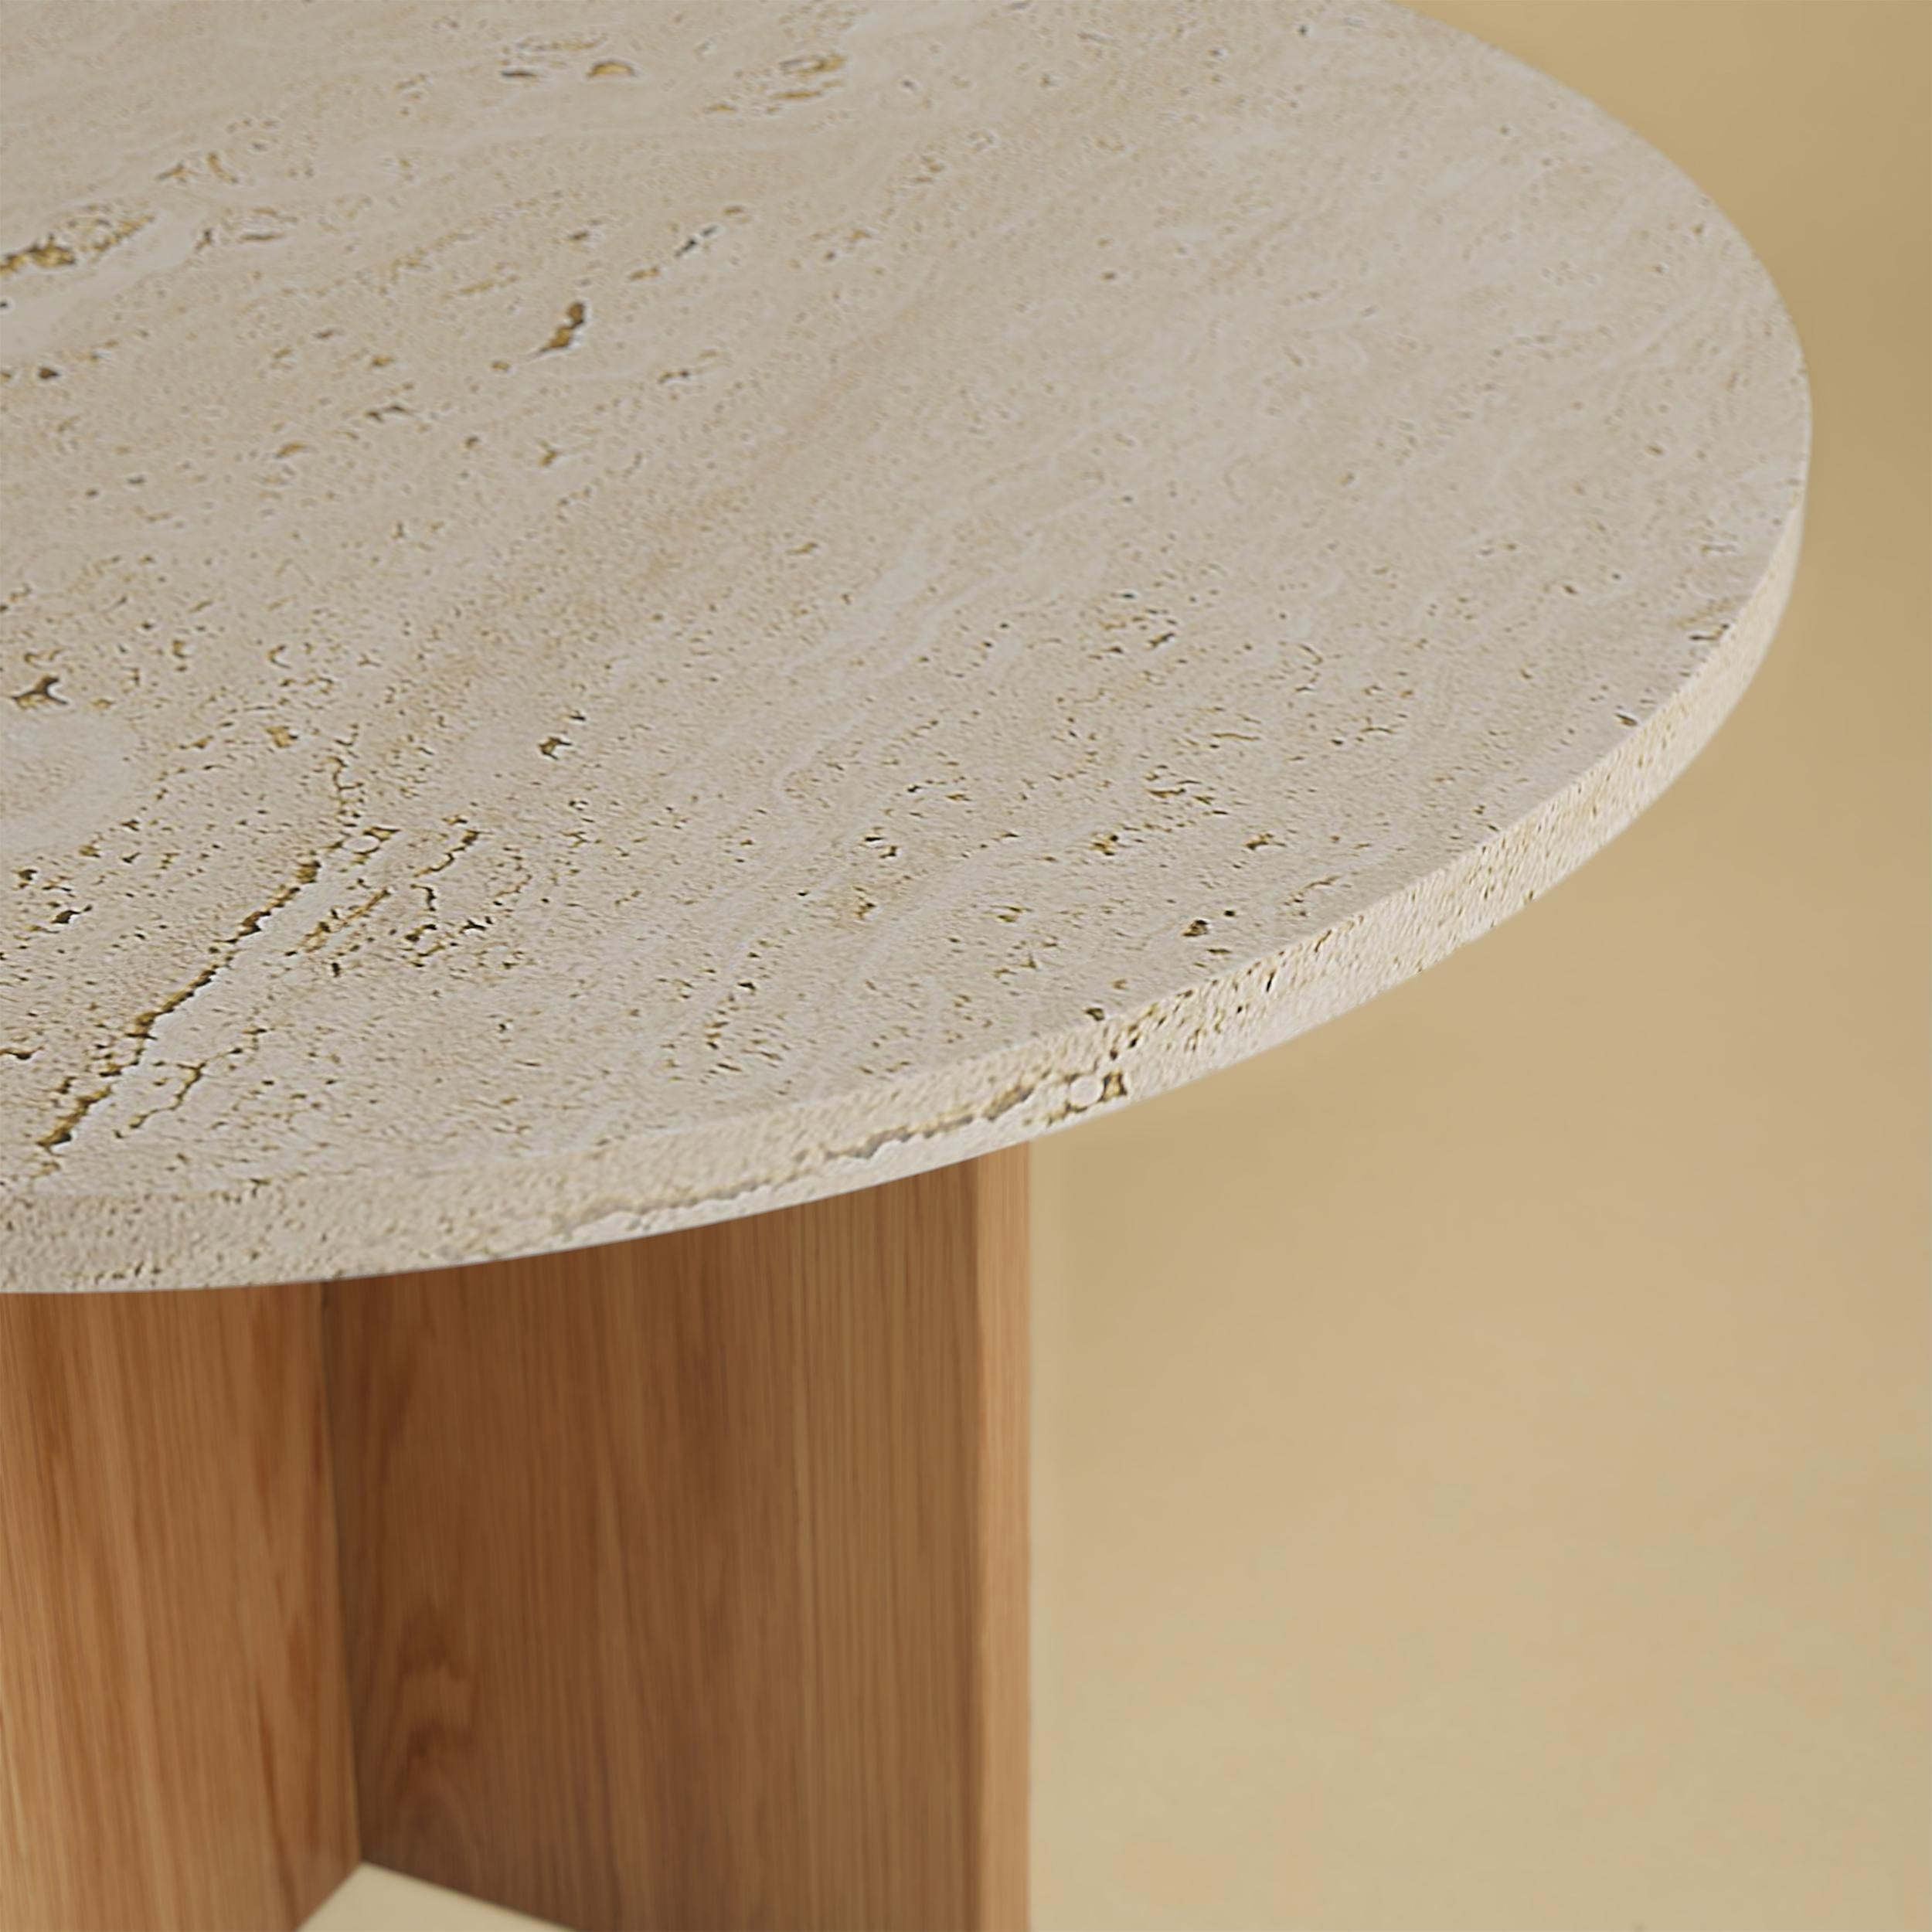 La table basse Tinian est fabriquée avec une base en bois de chêne et un plateau en travertin romain. Le plateau est circulaire et mesure 60 cm de diamètre, tandis que la base est obtenue en collant des planches de chêne perpendiculairement les unes